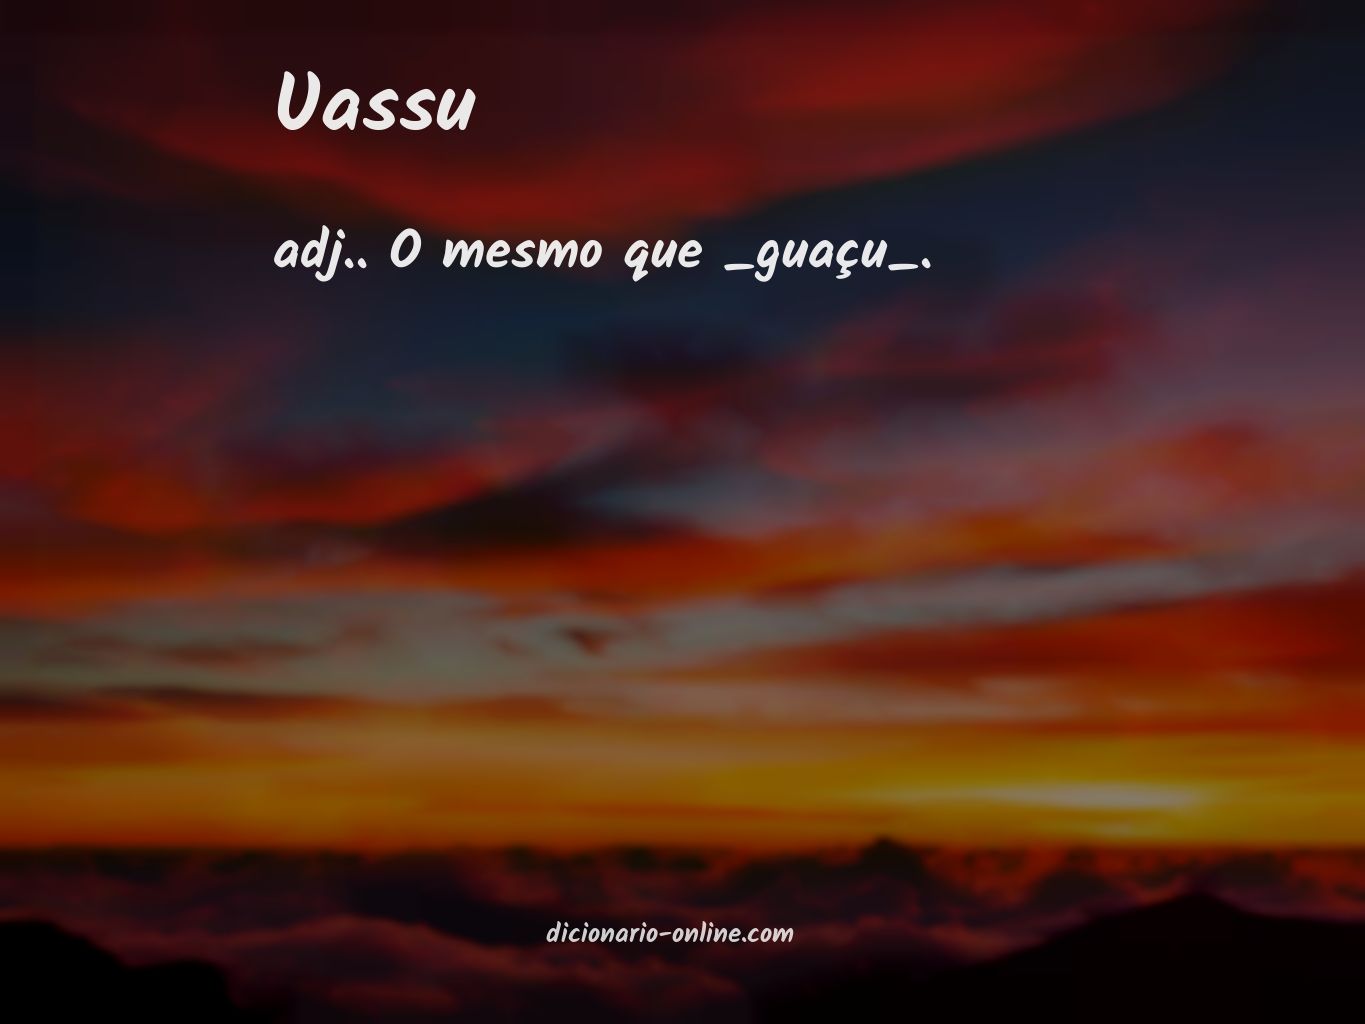 Significado de uassu